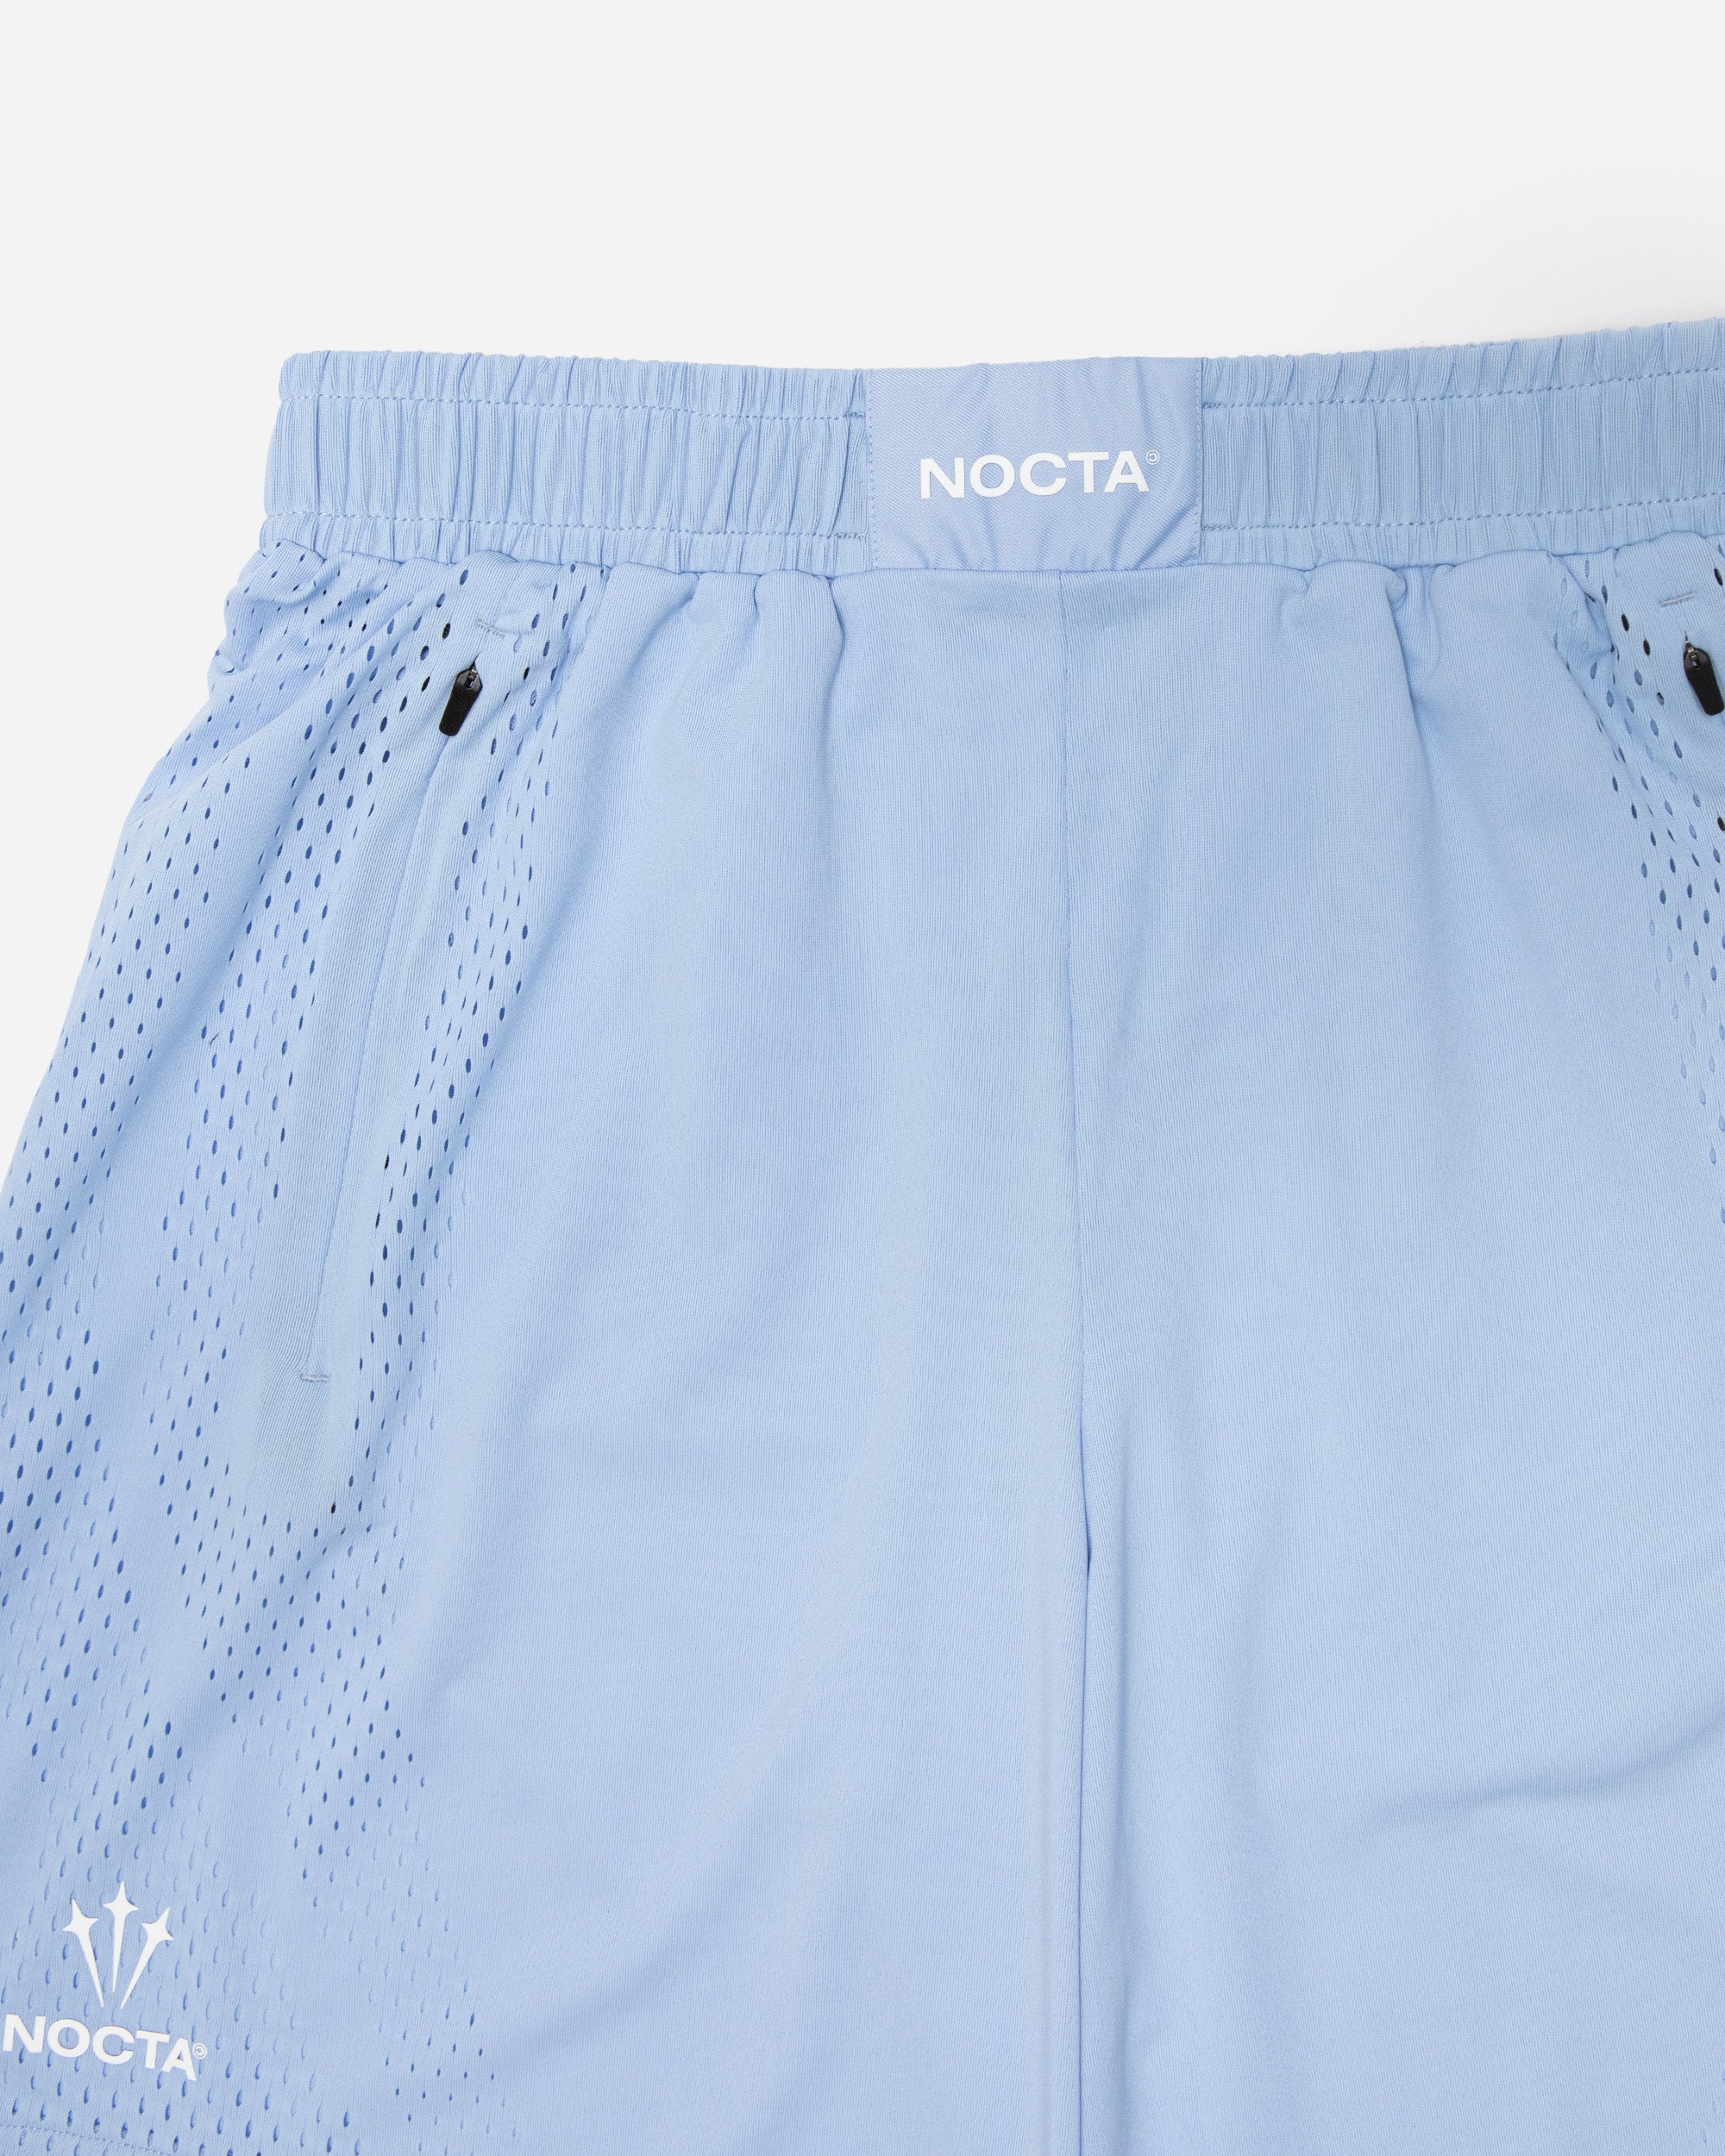 Nike Nike x NOCTA Dri-FIT Shorts COBALT BLISS/WHITE DV3651-479